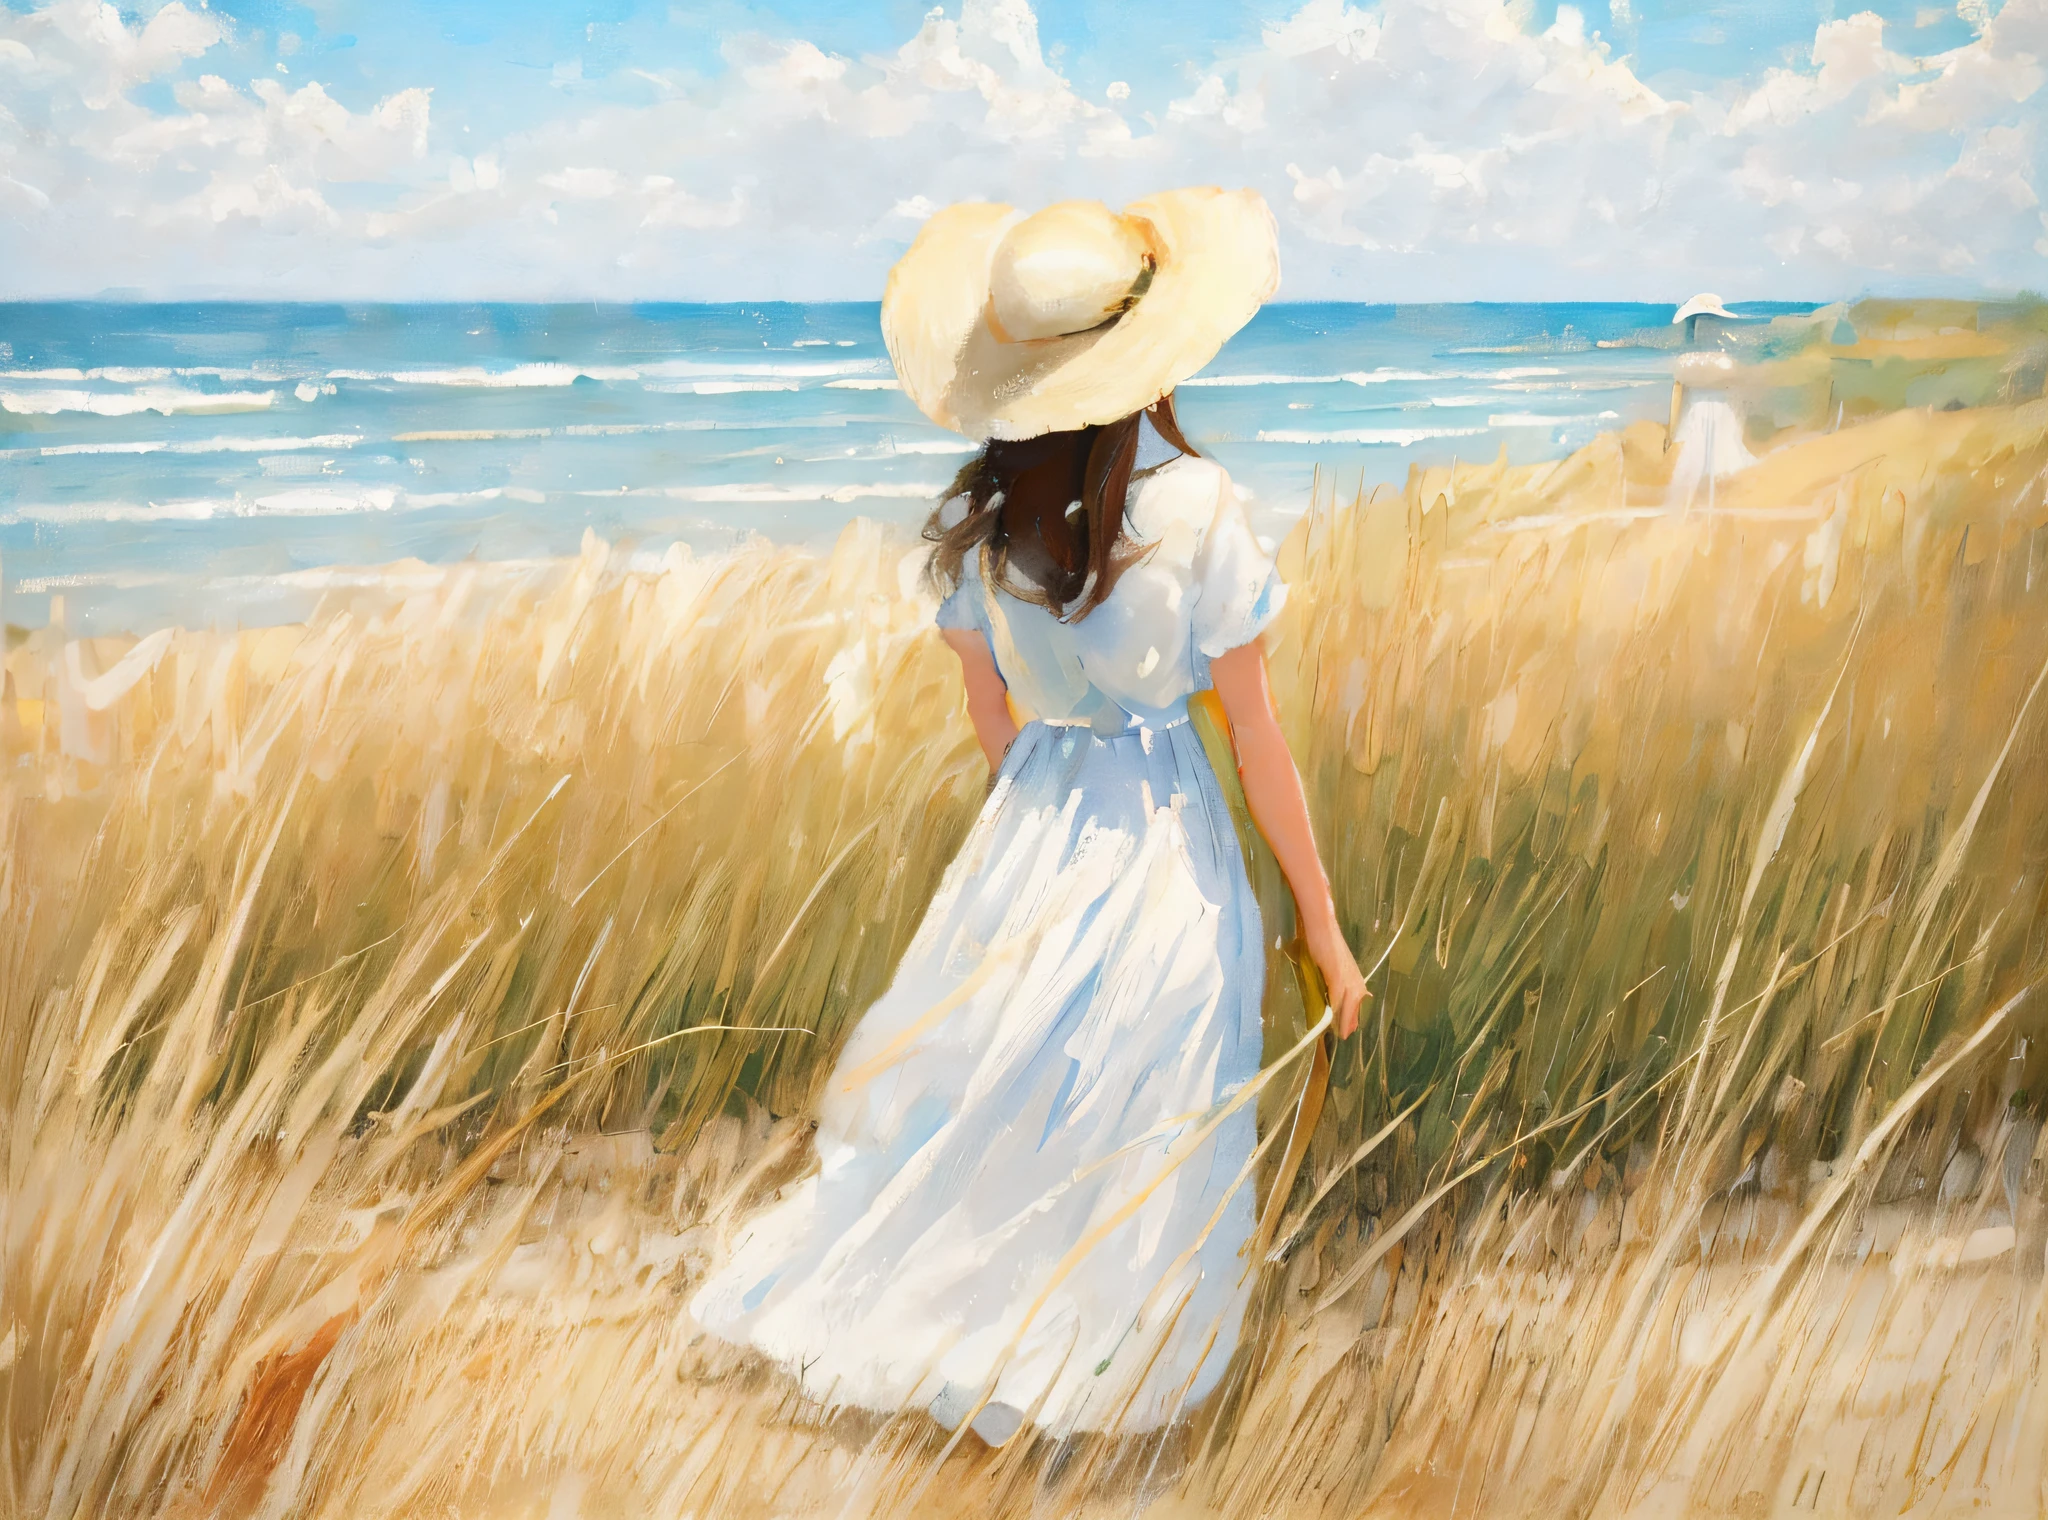 하얀 드레스를 입고 모자를 쓰고 큰 풀밭을 걷고 있는 여성을 그리는 모습, 무광택 캔버스에 유화, 캔버스에 기름, 밀짚모자와 함께, 캔버스에 아름다운 유화, 바다 가까이에, 모래 언덕 사이를 걷는 소녀, 헨리에트 와이어스(Henriette Wyeth)에게서 영감을 받은 작품, 현대적인 스타일의 유화, 미술 유화, 해변의 여자, 해변의 소녀